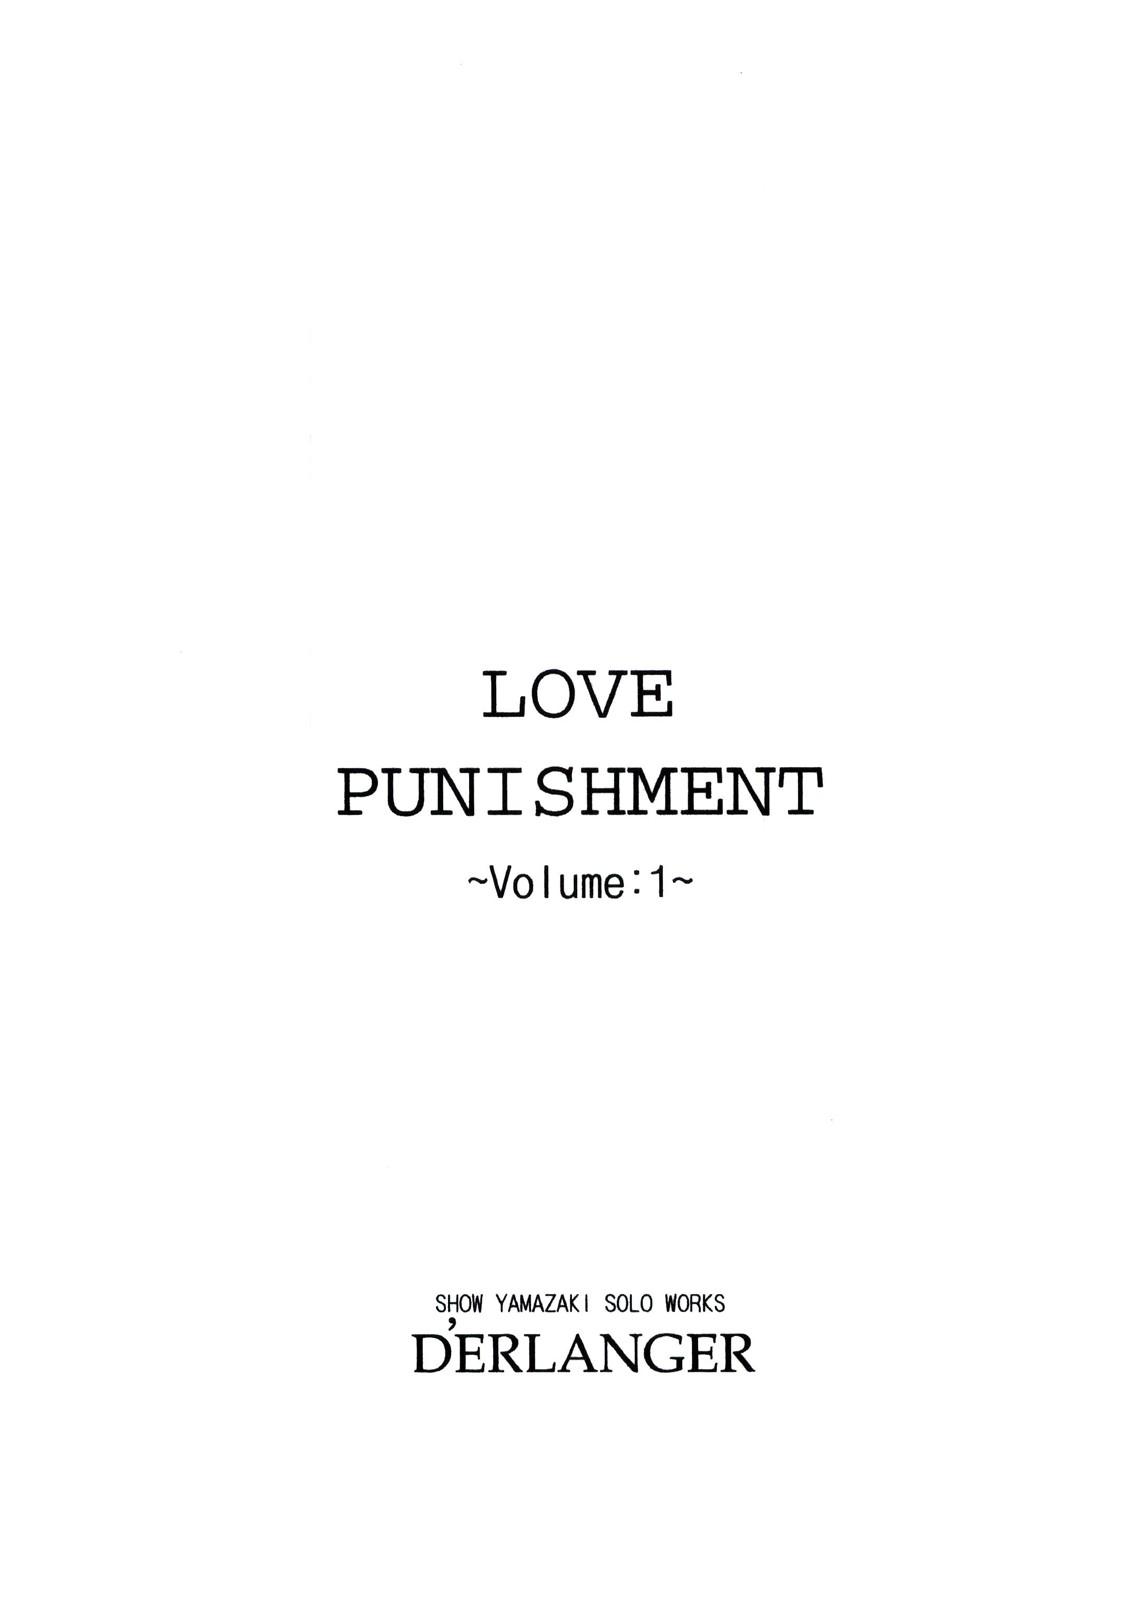 LOVE PUNISHMENT VOLUME:1 2